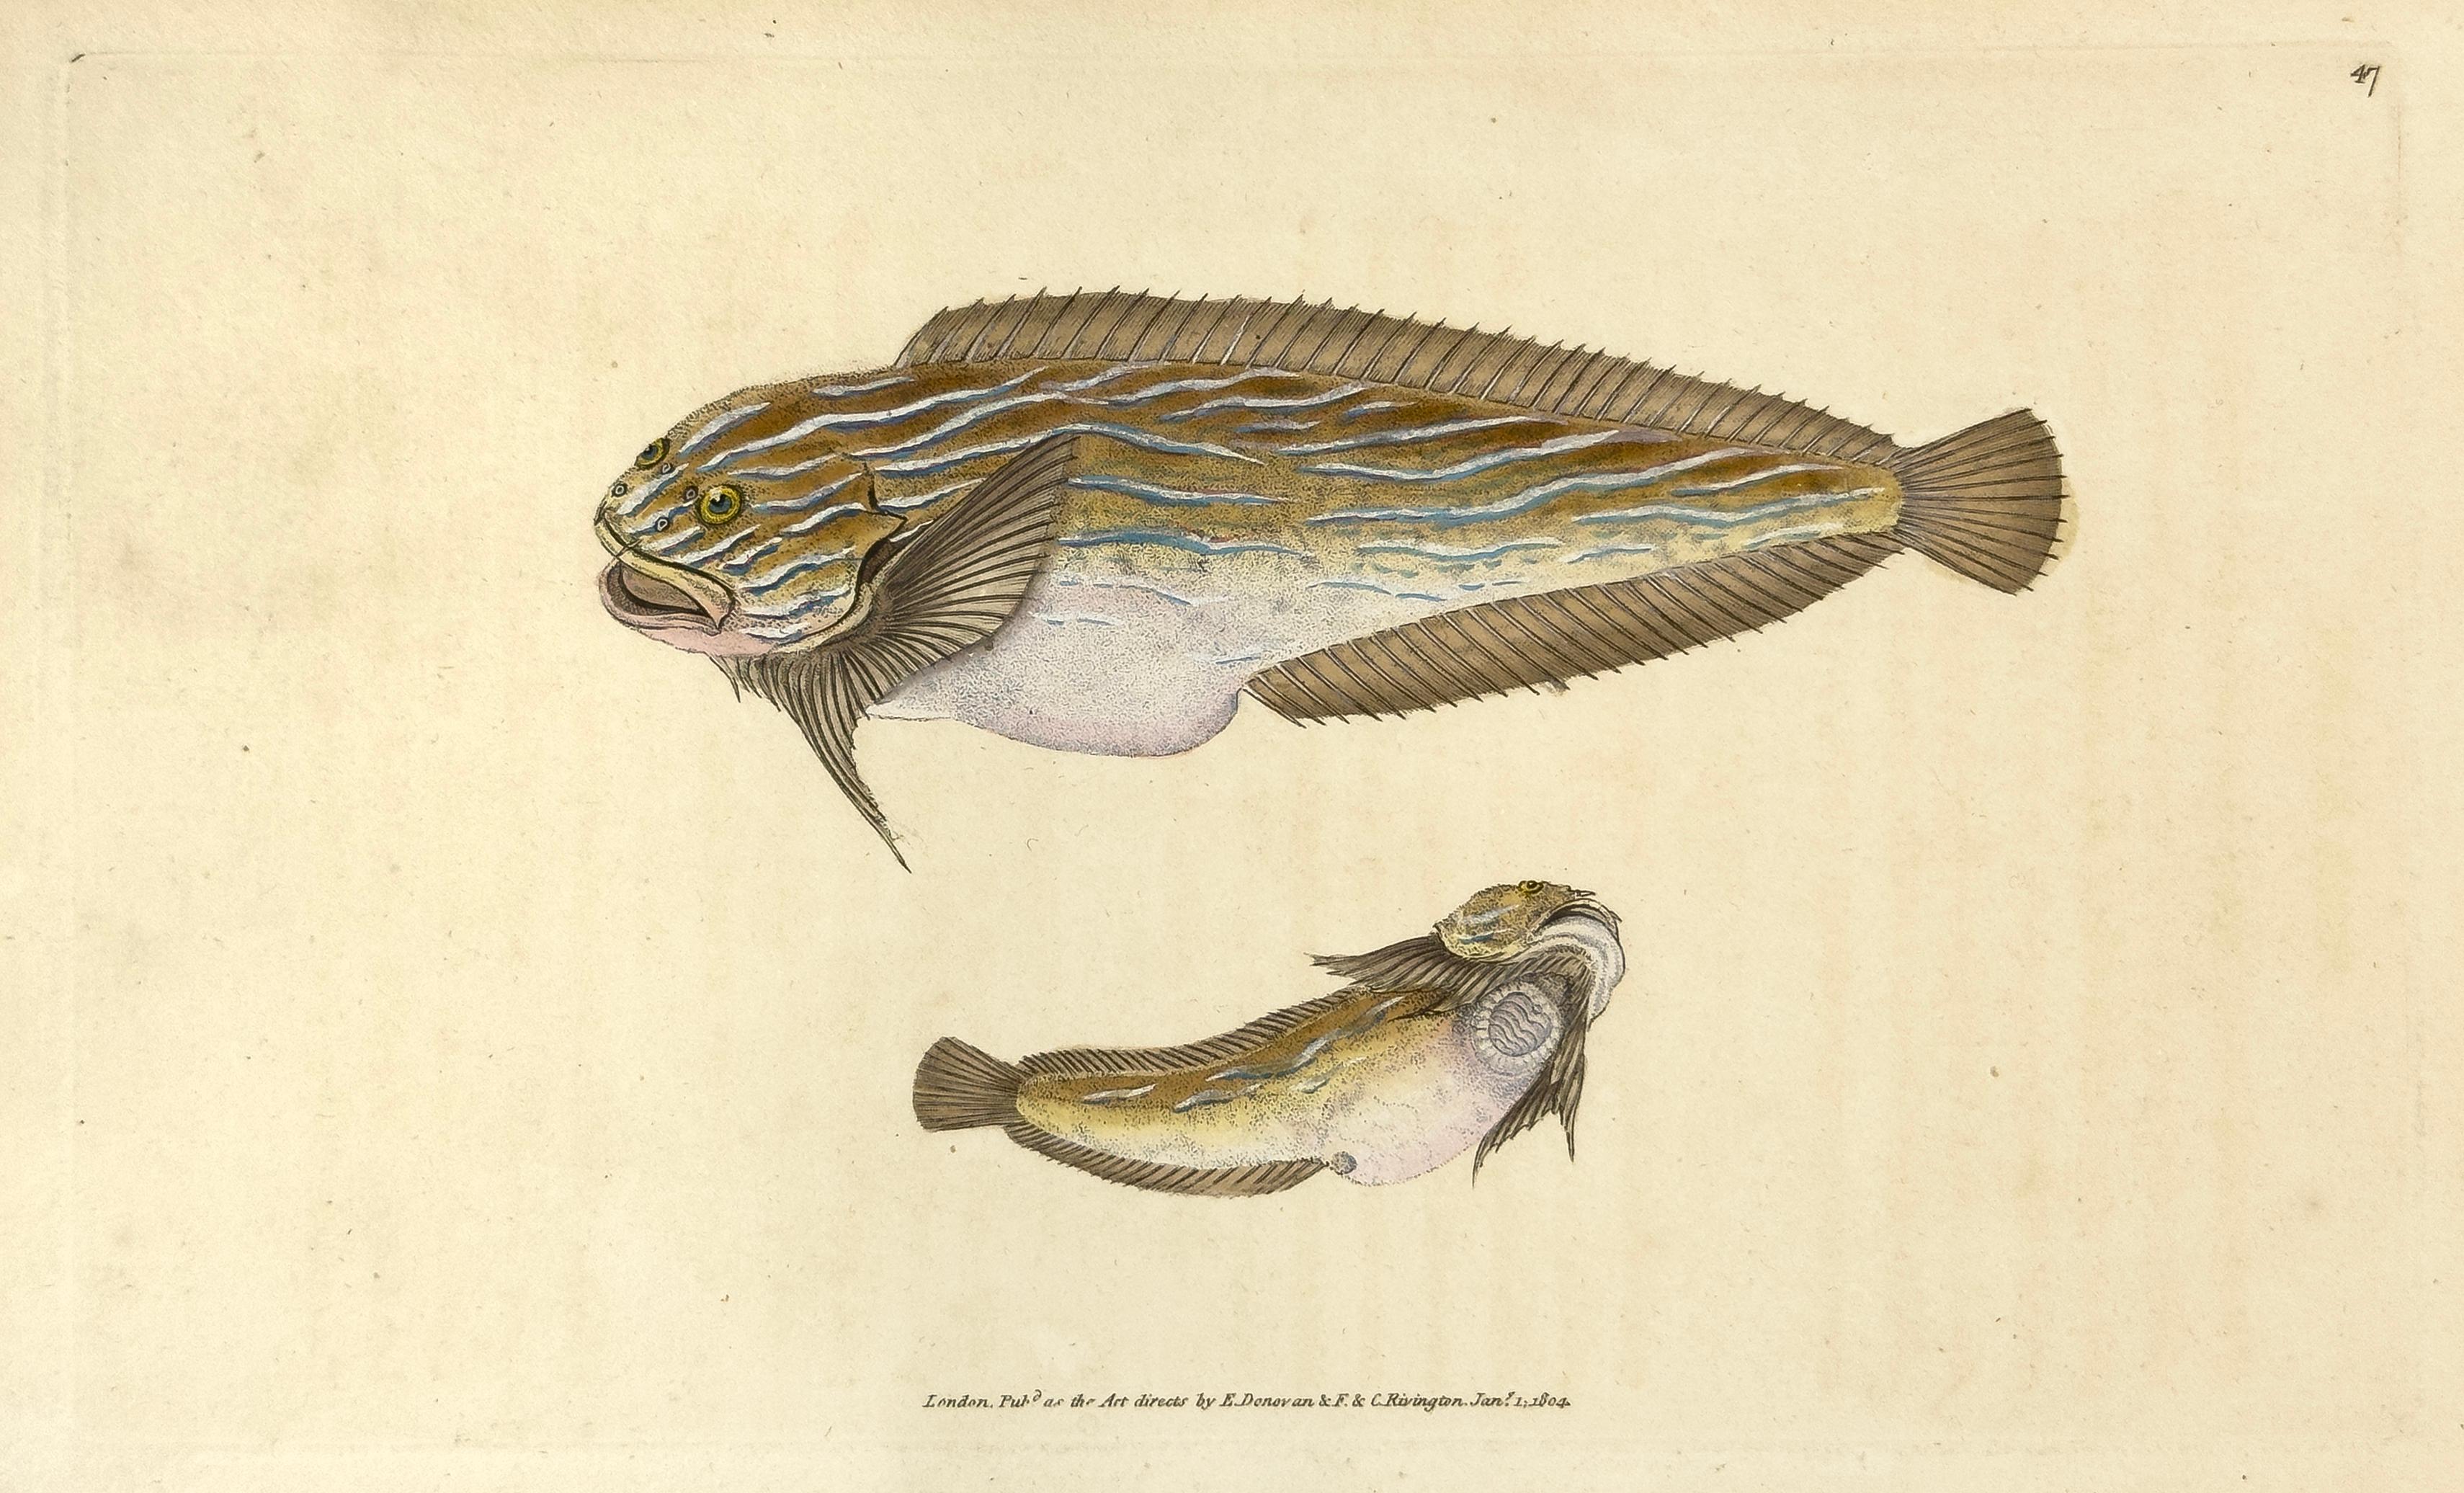 47: Cyclopterus liparis, Unctuous Lump-Sucker